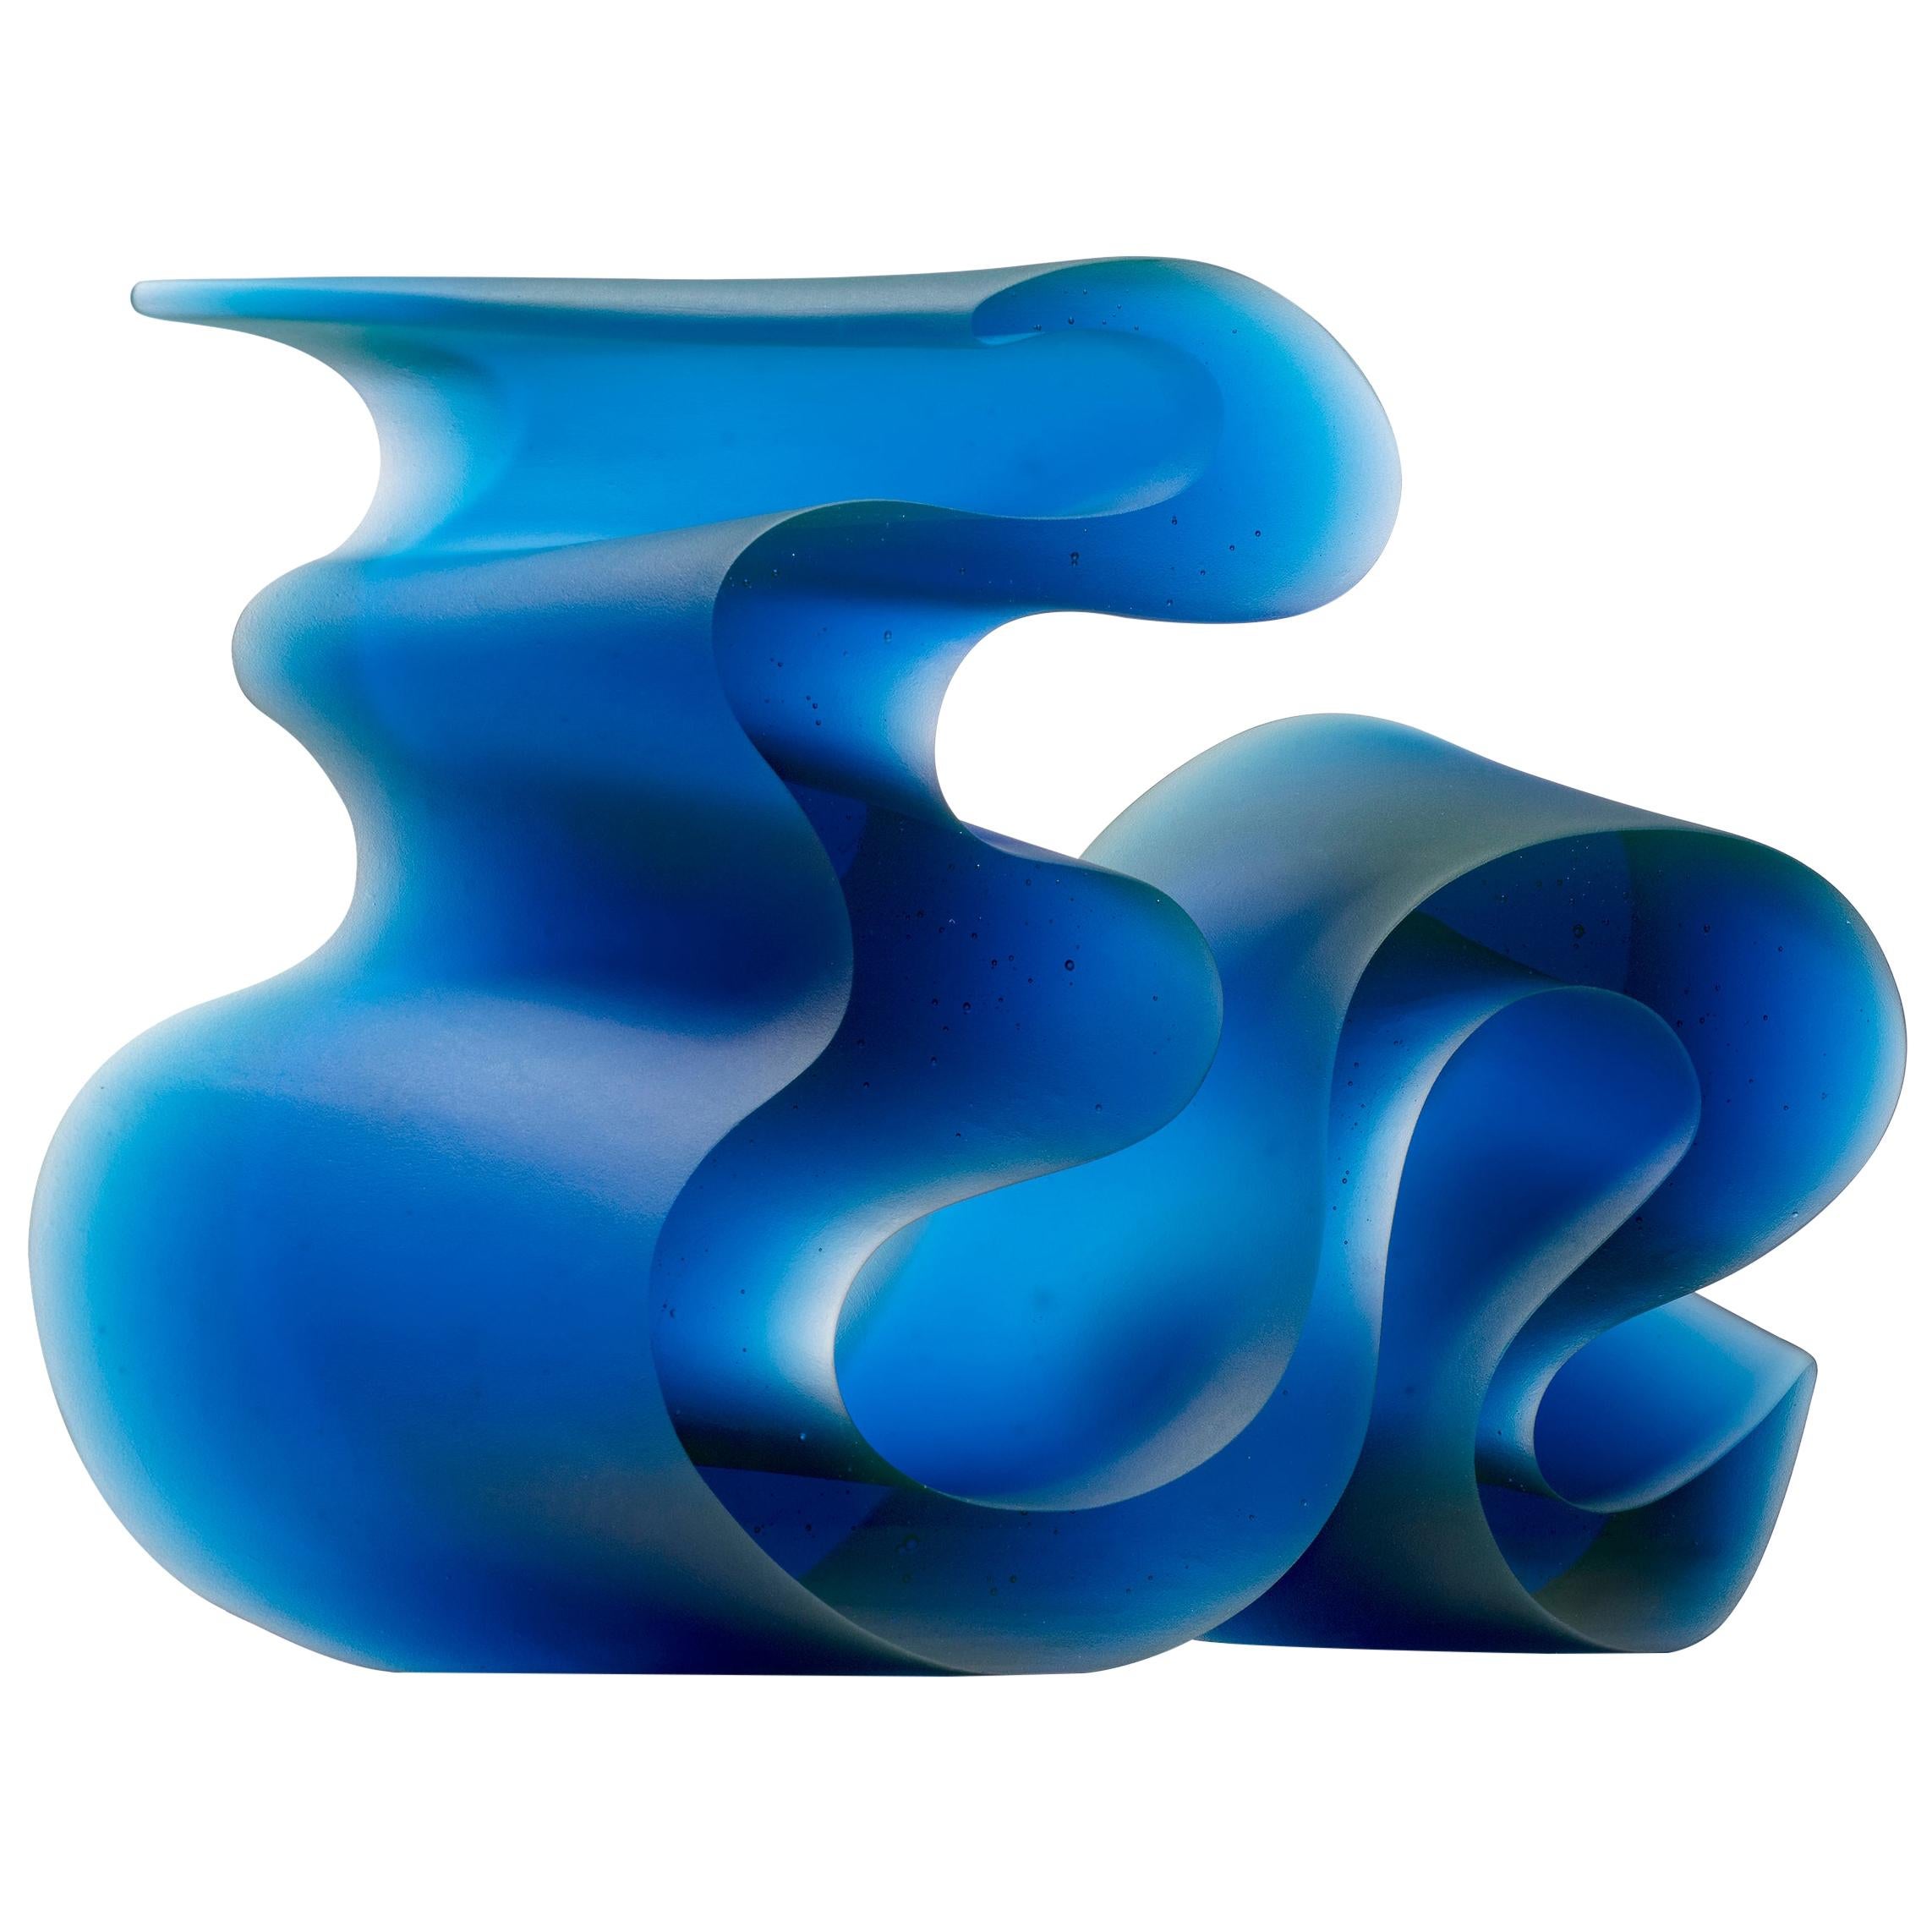 Big Blue Line, a Unique Blue Cast Glass Sculpture by Karin Mørch